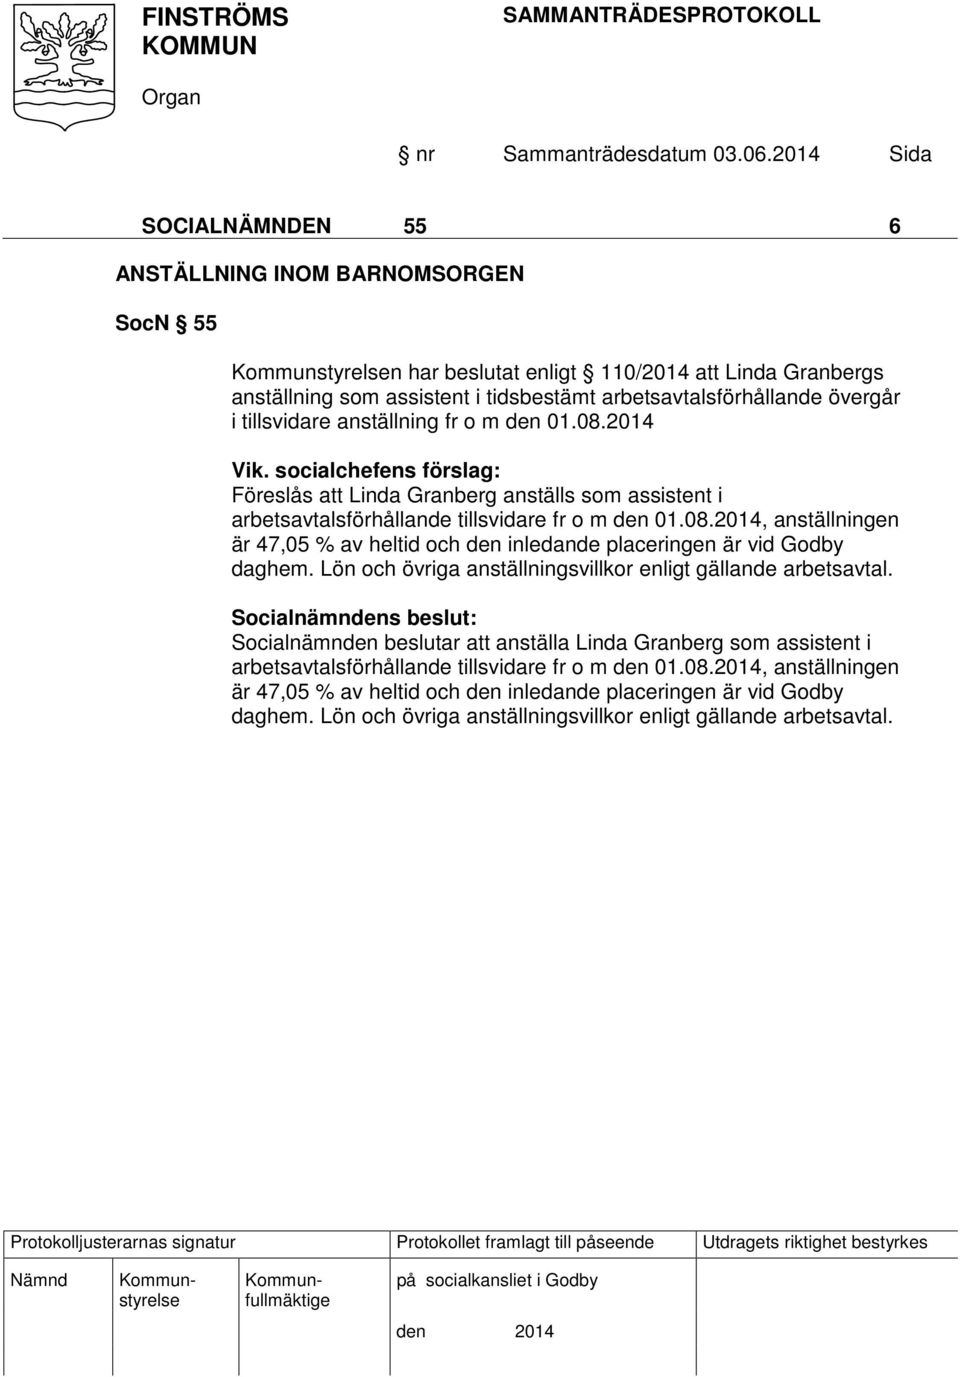 Lön och övriga anställningsvillkor enligt gällande arbetsavtal. Socialnämnden beslutar att anställa Linda Granberg som assistent i arbetsavtalsförhållande tillsvidare fr o m den 01.08.